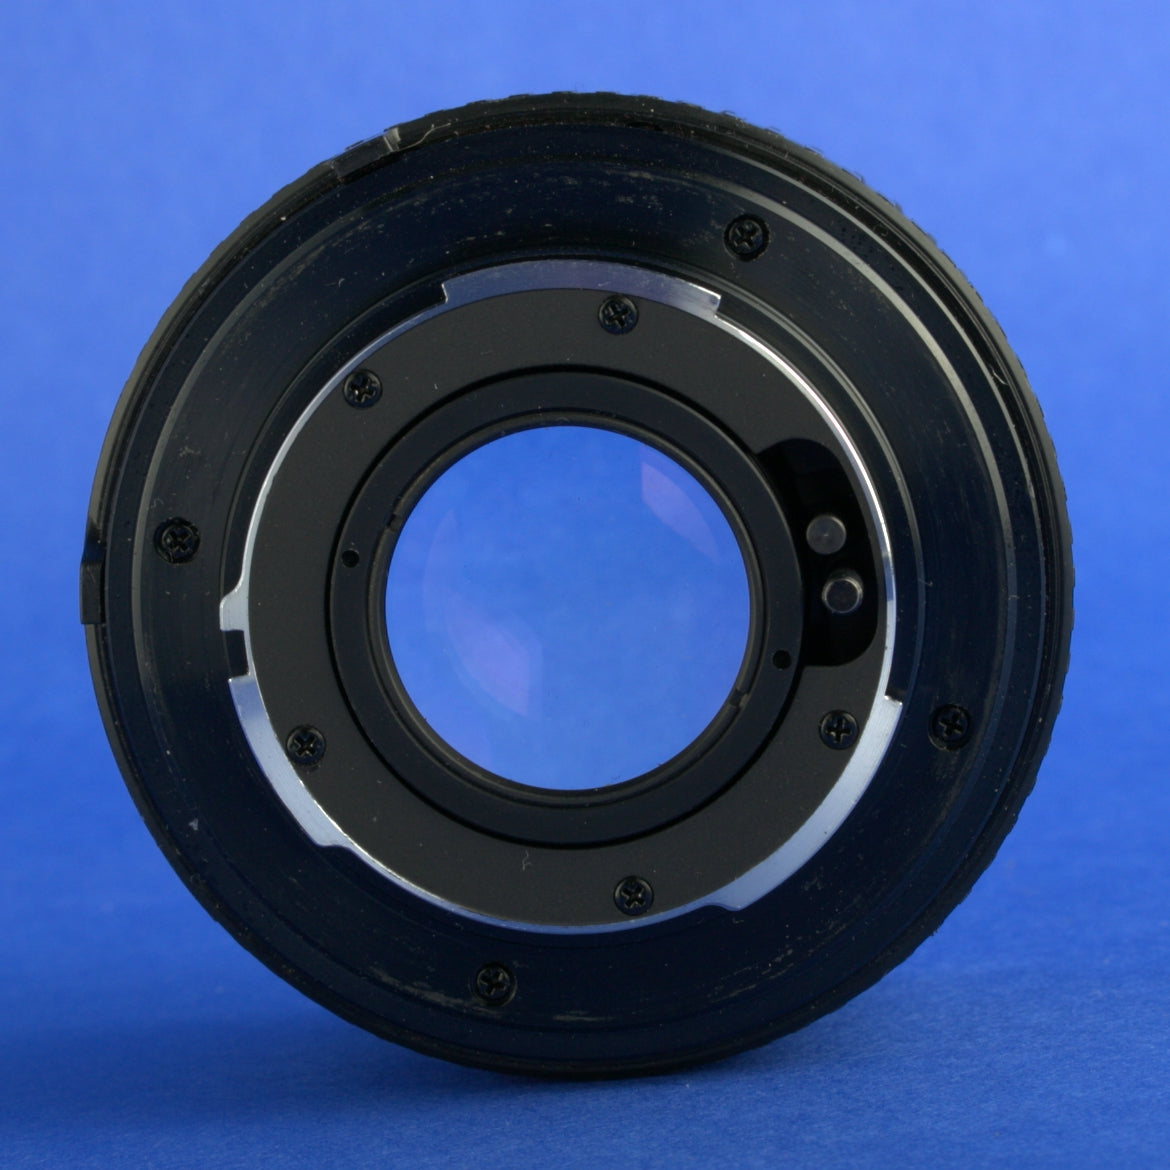 Minolta MD 50mm 1.7 Lens